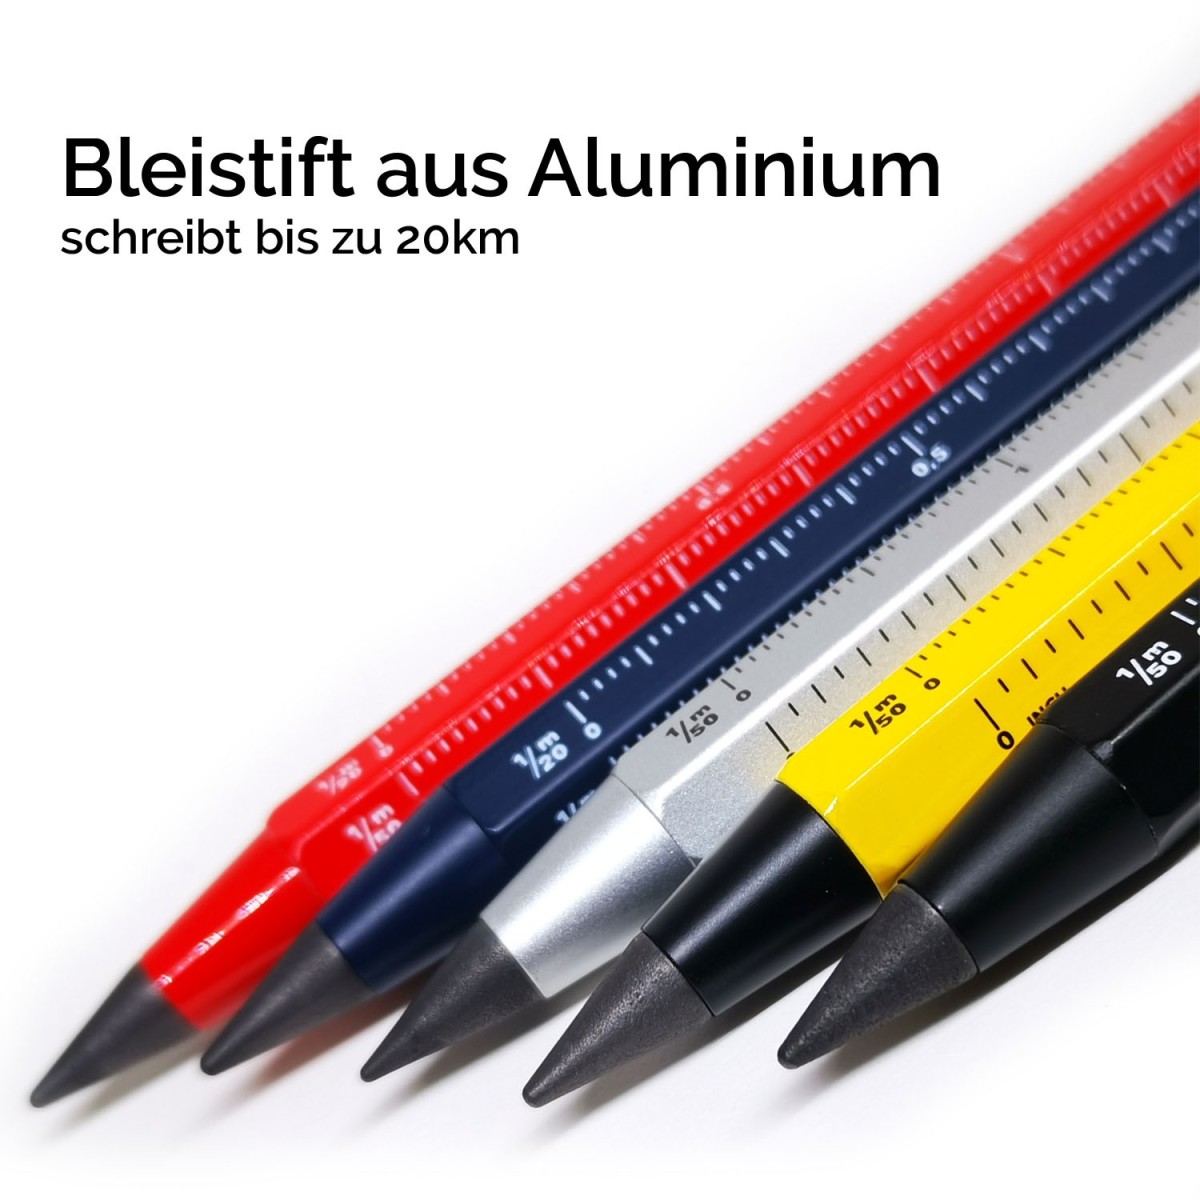 massiver Bleistift aus Aluminium mit endloser Mine